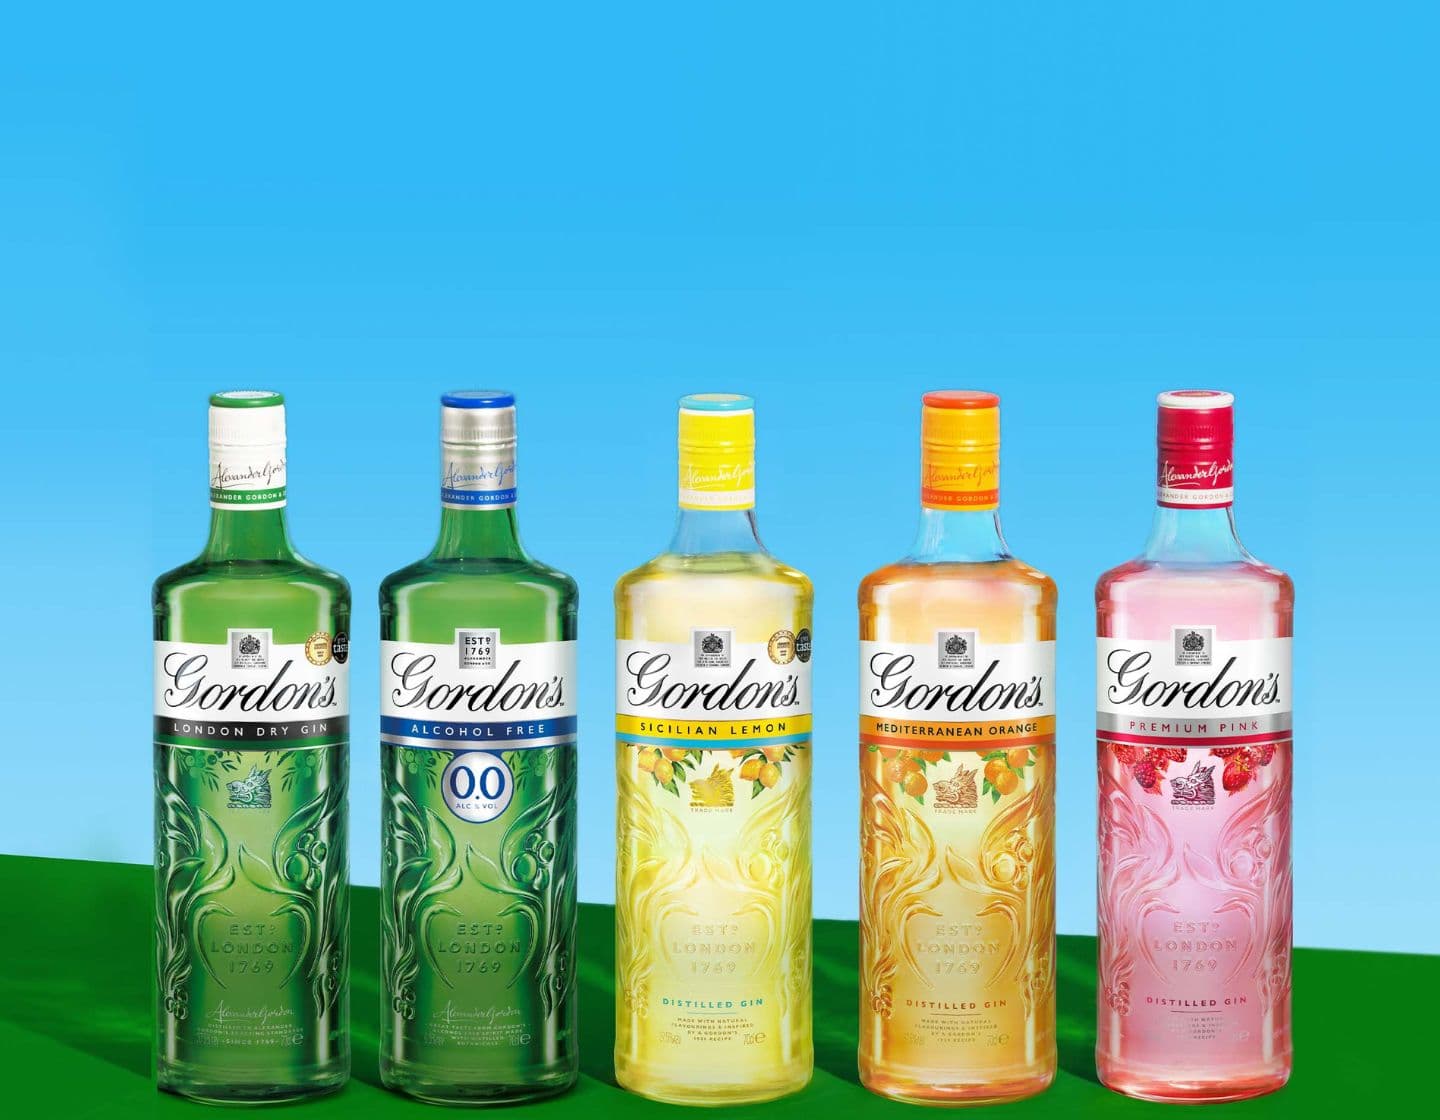 Seleção de garrafas de gin Gordon's em um fundo azul e amarelo 